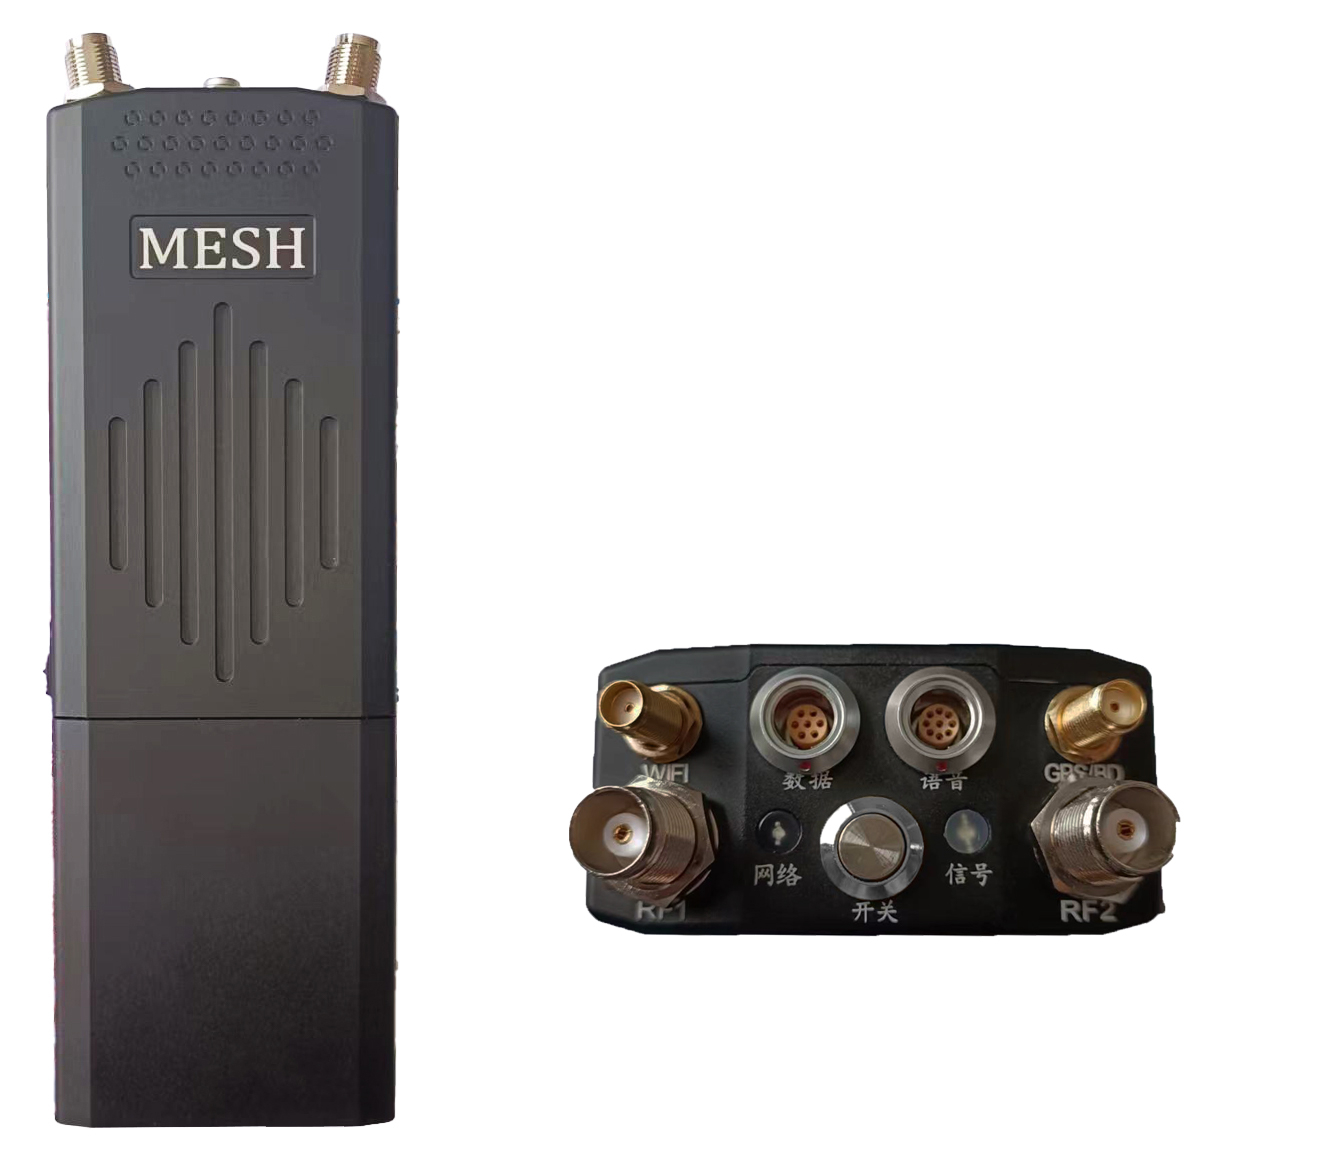 AnyMESH-HR01-2W单兵手持型自组网电台 单兵mesh电台